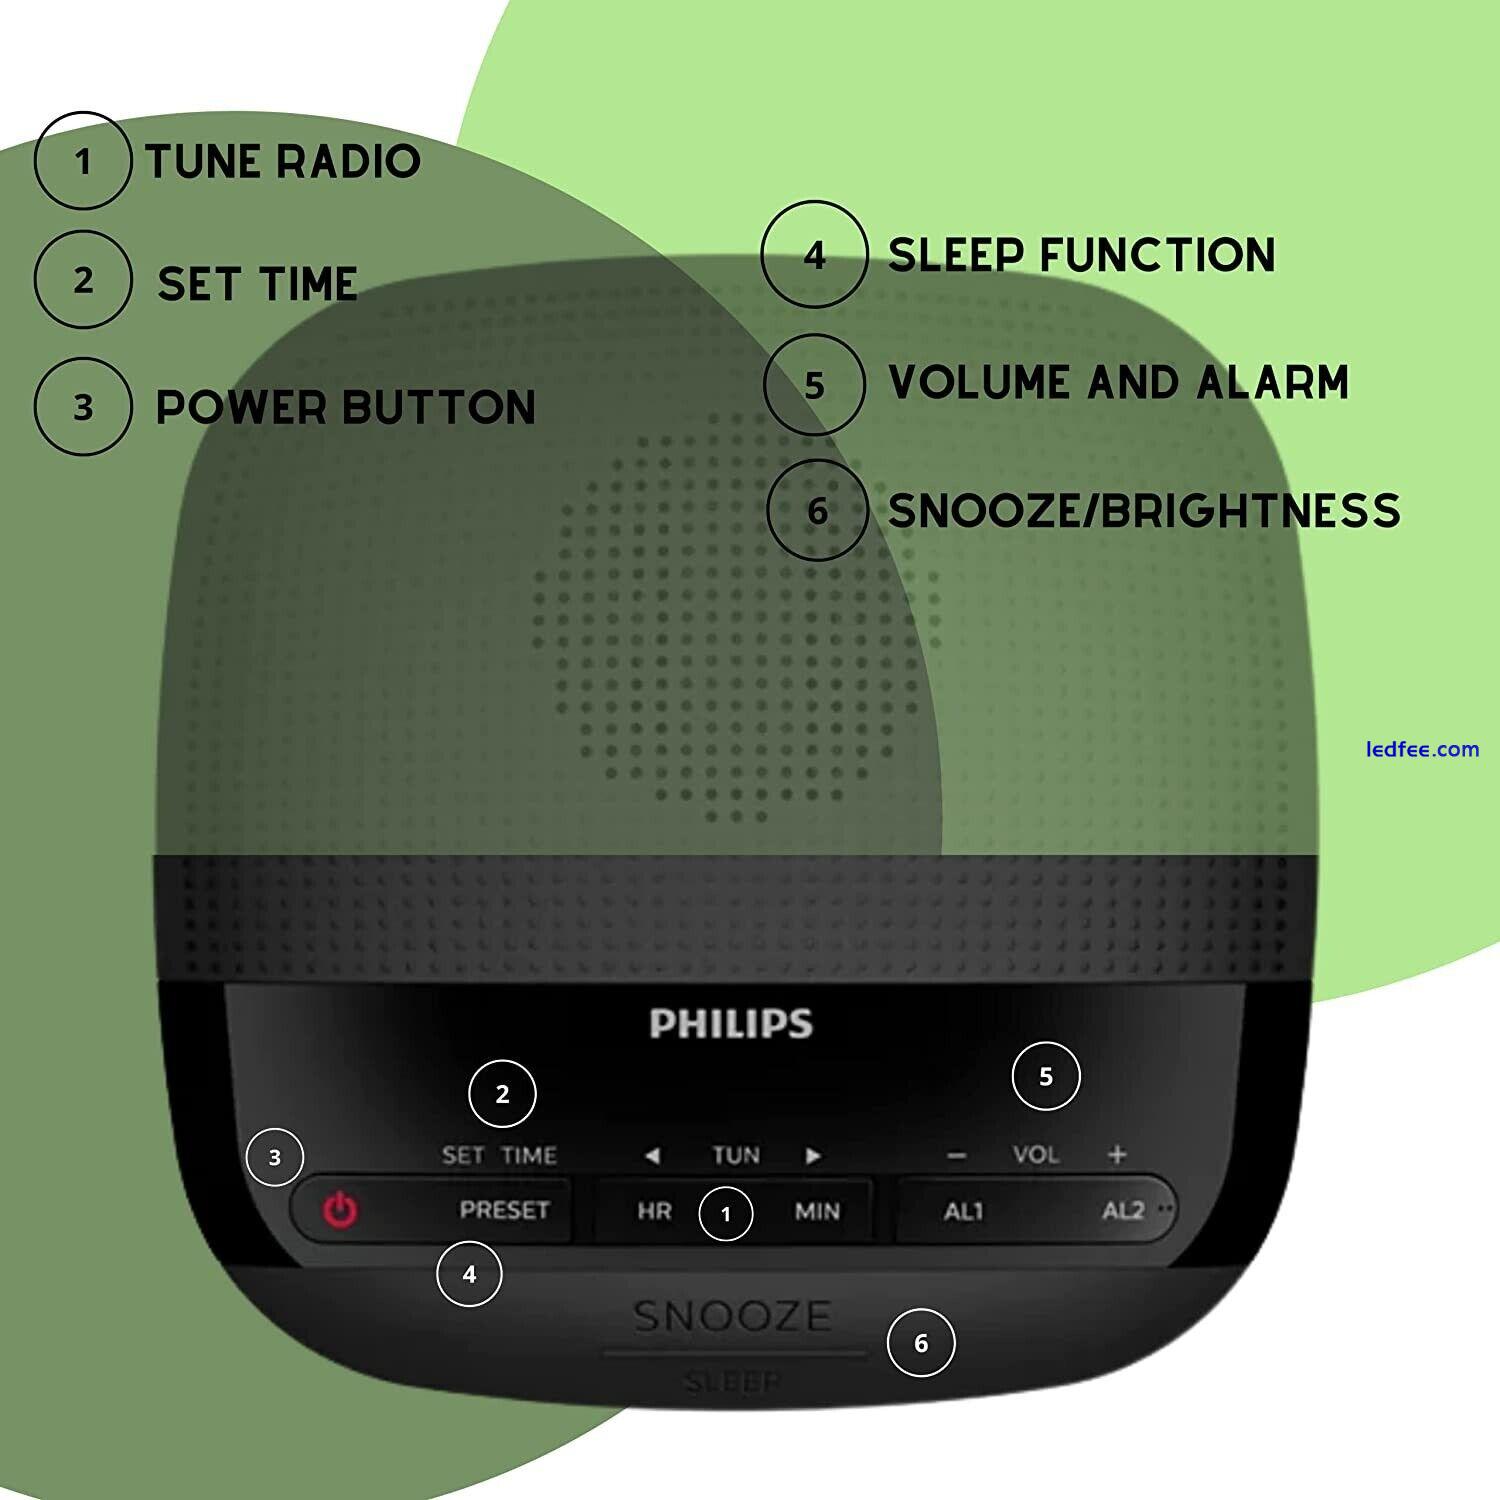 Philips Digital Alarm Clock FM Radio. LED Display, Easy Snooze. Sleep Timer. 1 